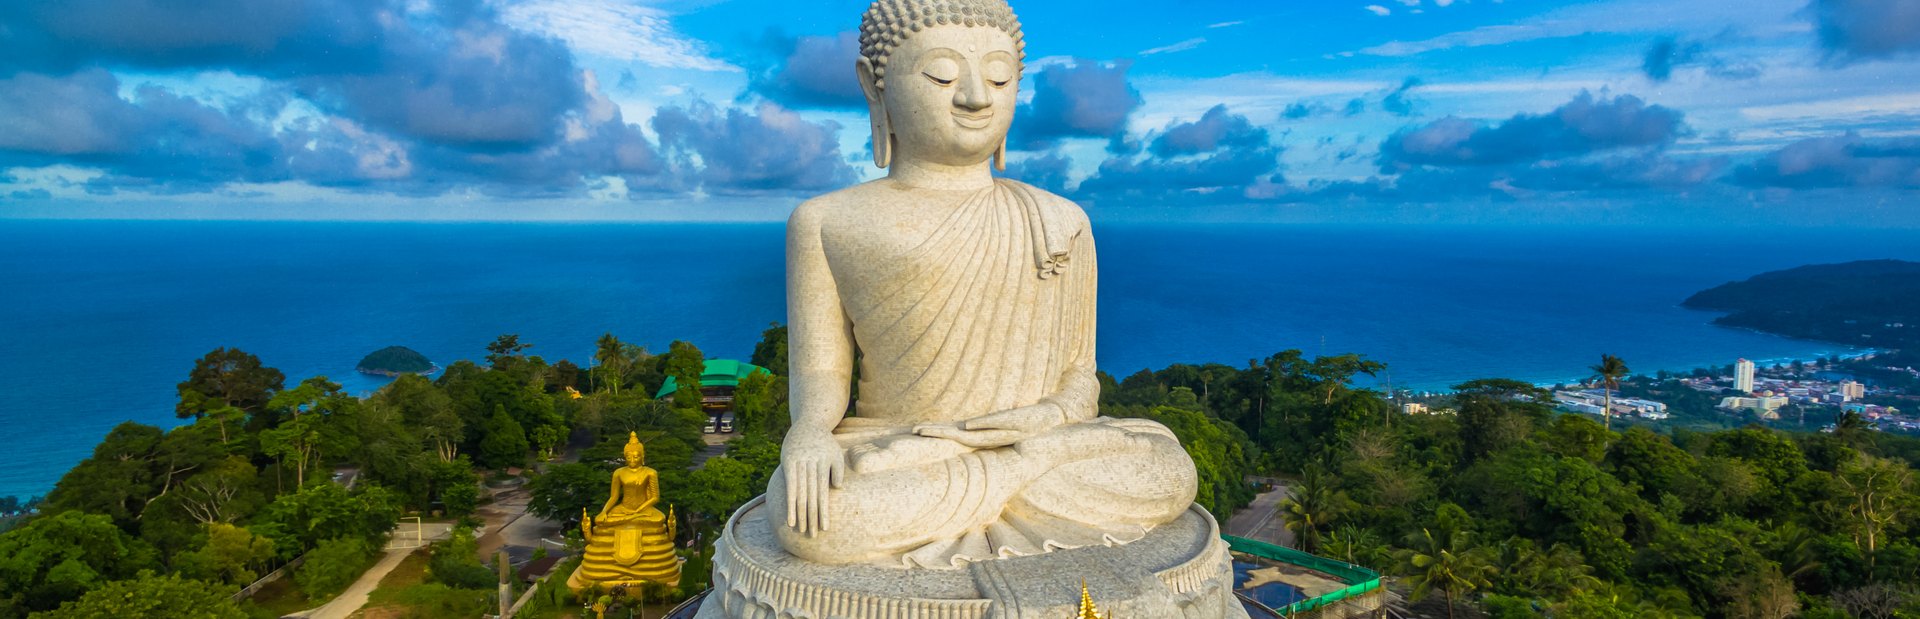 The Big Buddha Image 1